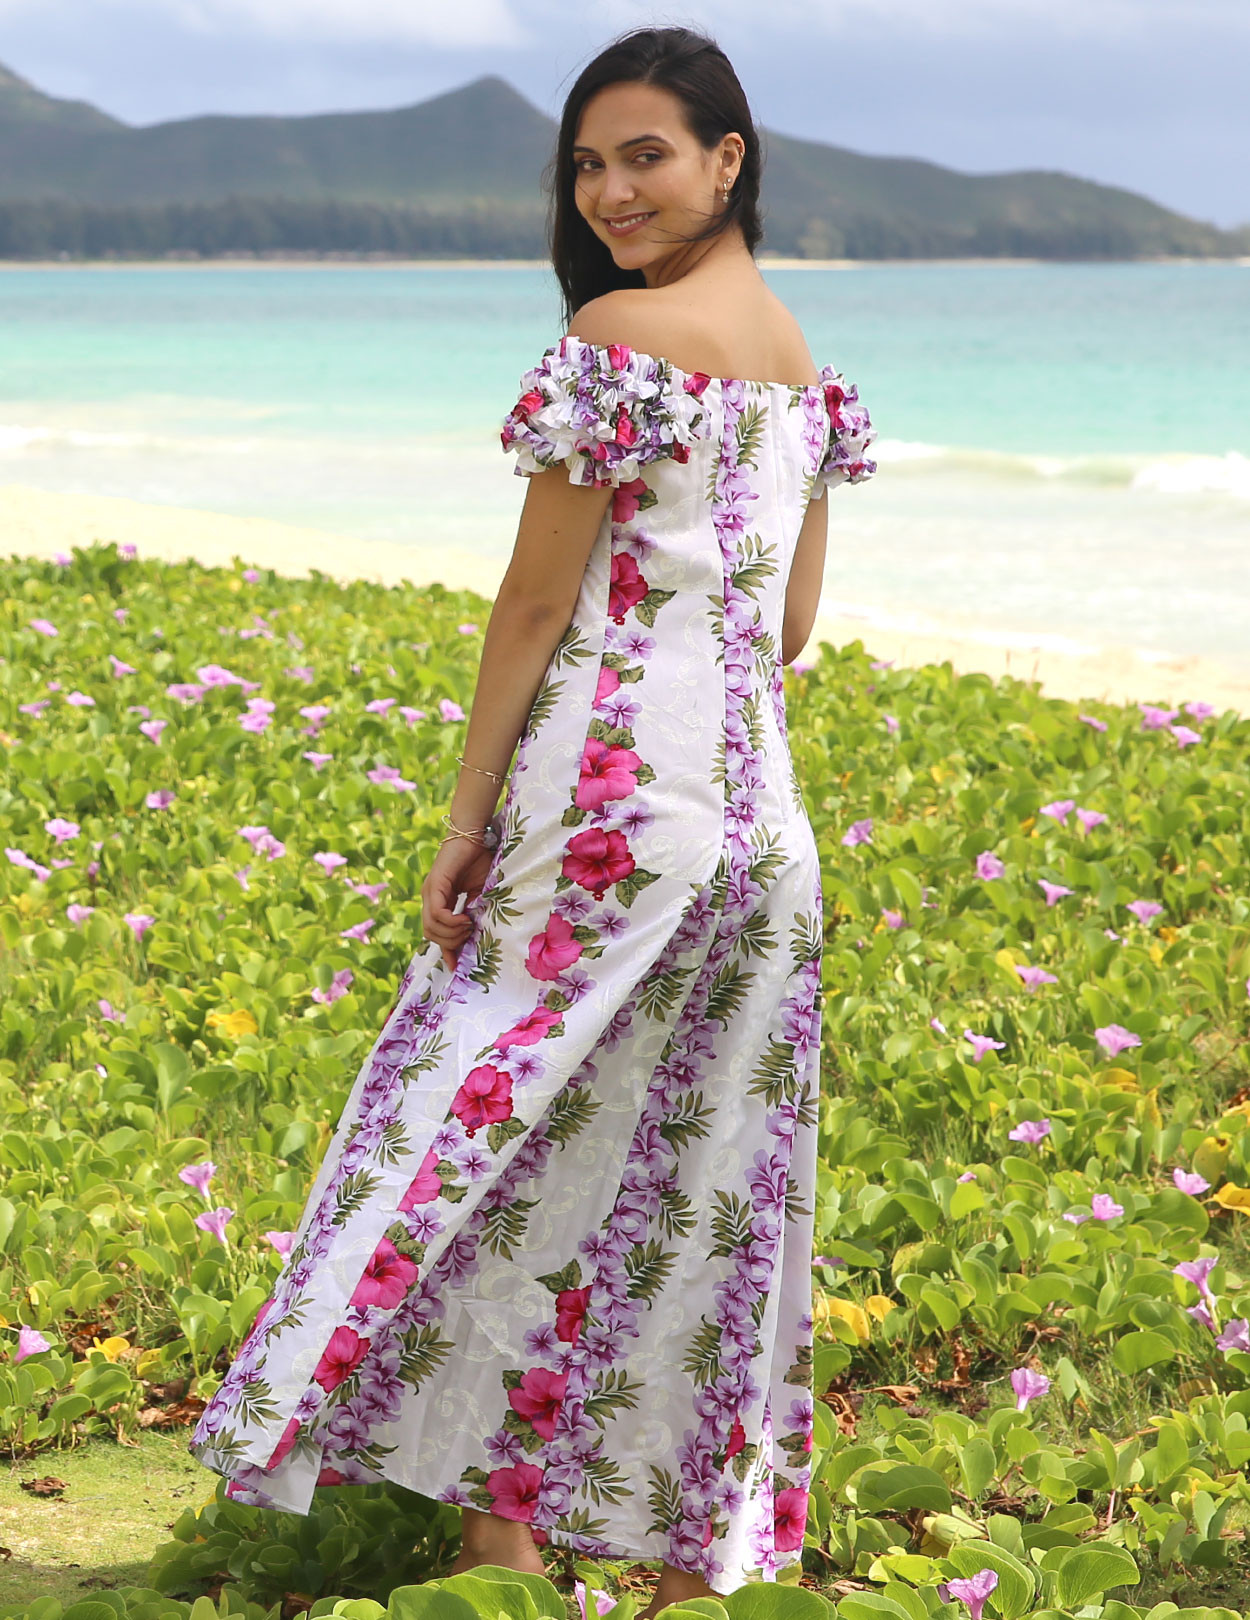 Big Island Ruffled Hawaiian Wedding Dress Aloha Hawaiian Wedding Place